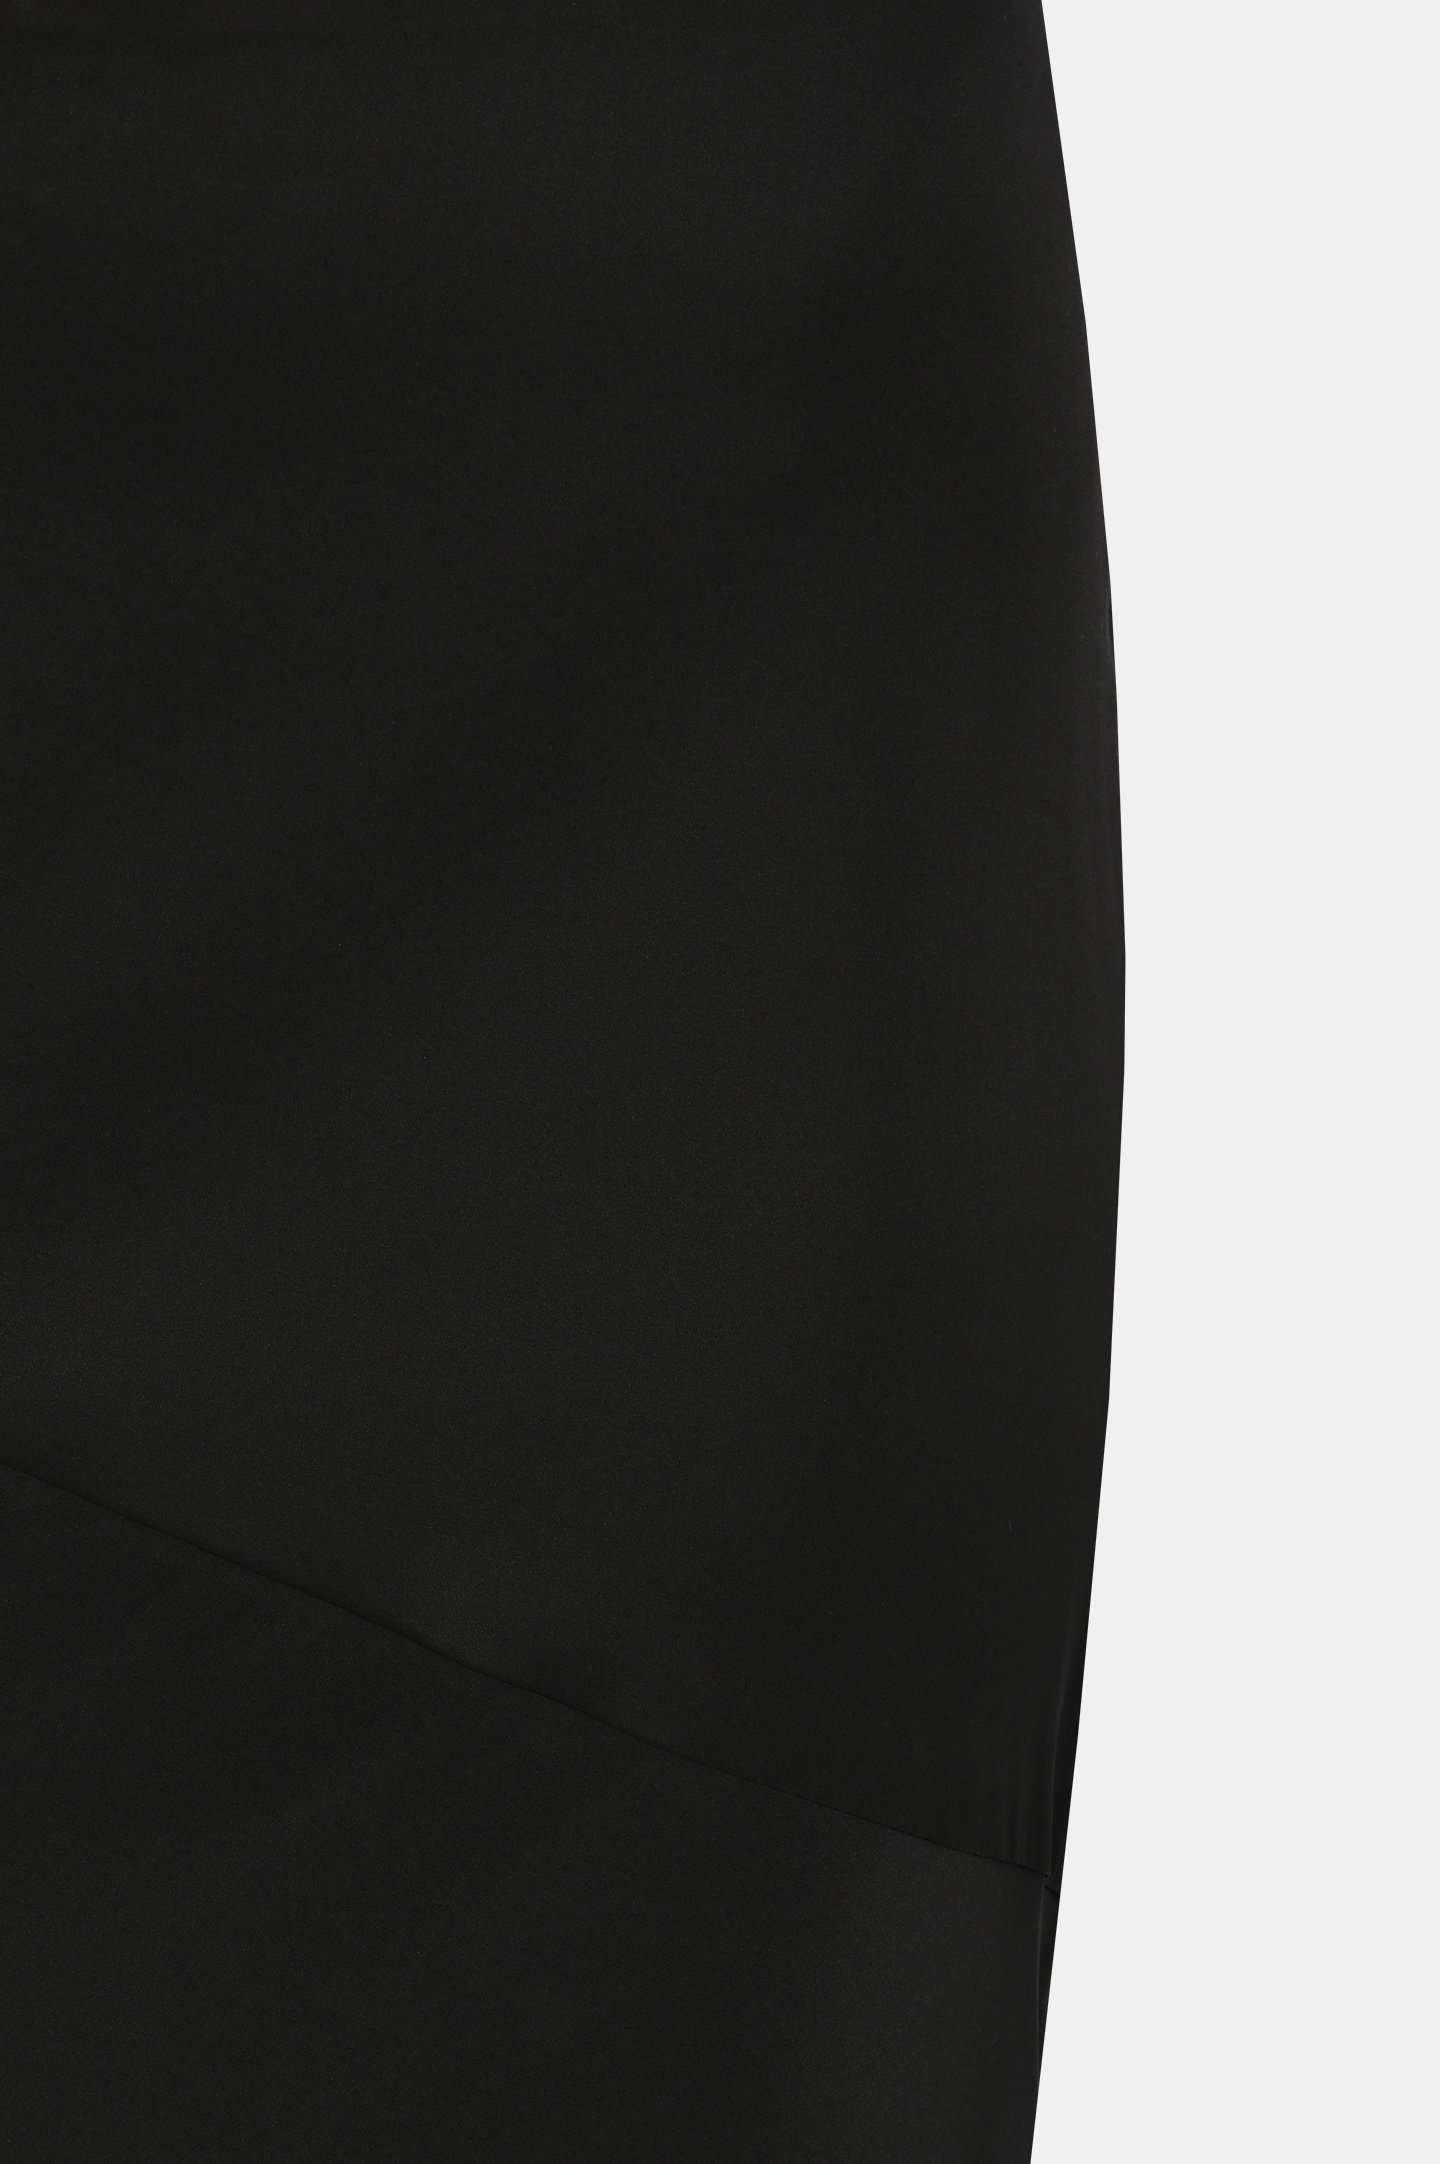 Юбка из шелка и эластана JACOB LEE WSS01224, цвет: Черный, Женский